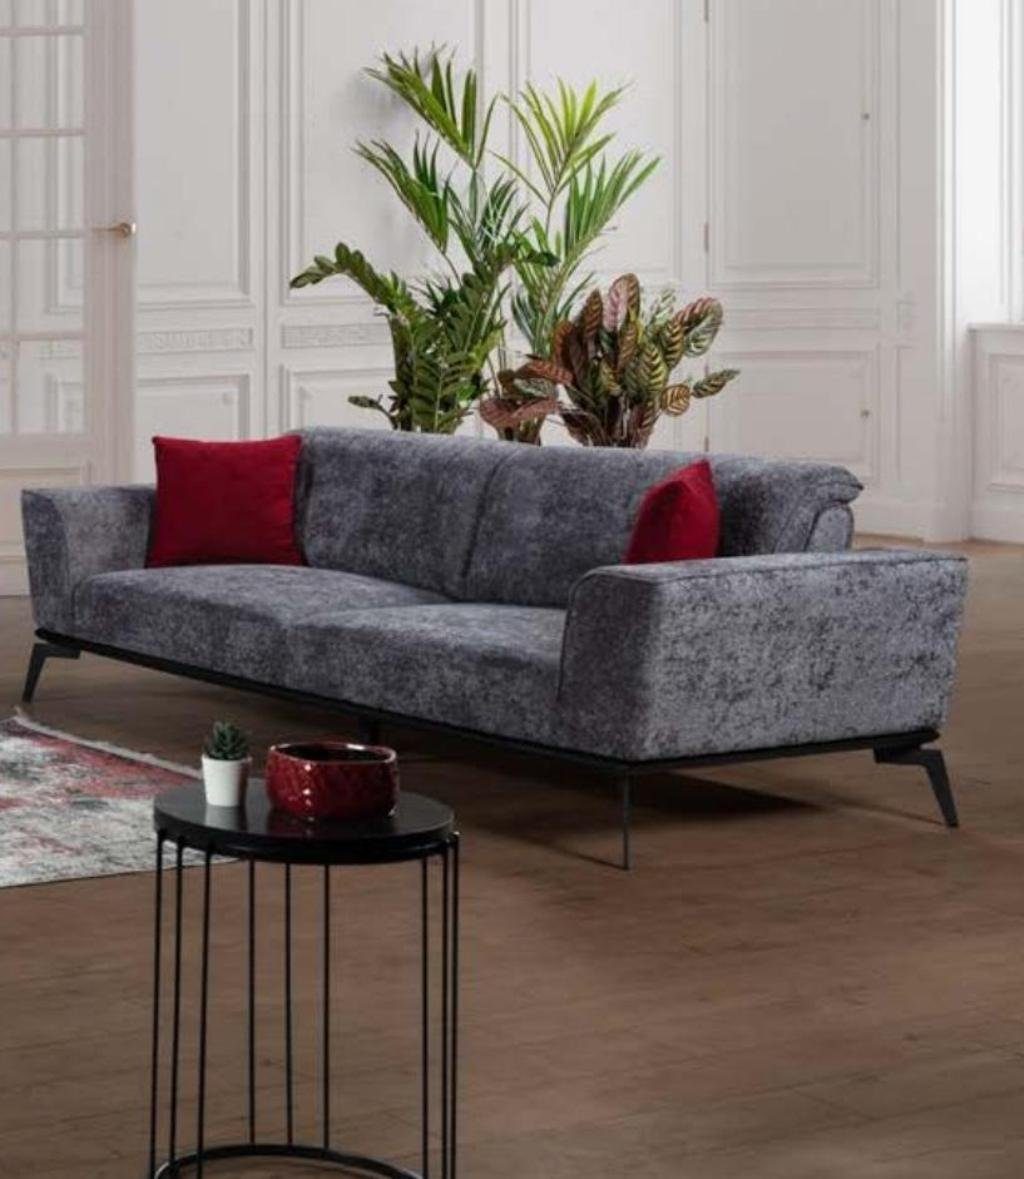 JVmoebel Sofa Grauer 3-Sitzer Sofas Sitz Stoff Textil Wohnzimmer Möbel Couch, Made in Europe